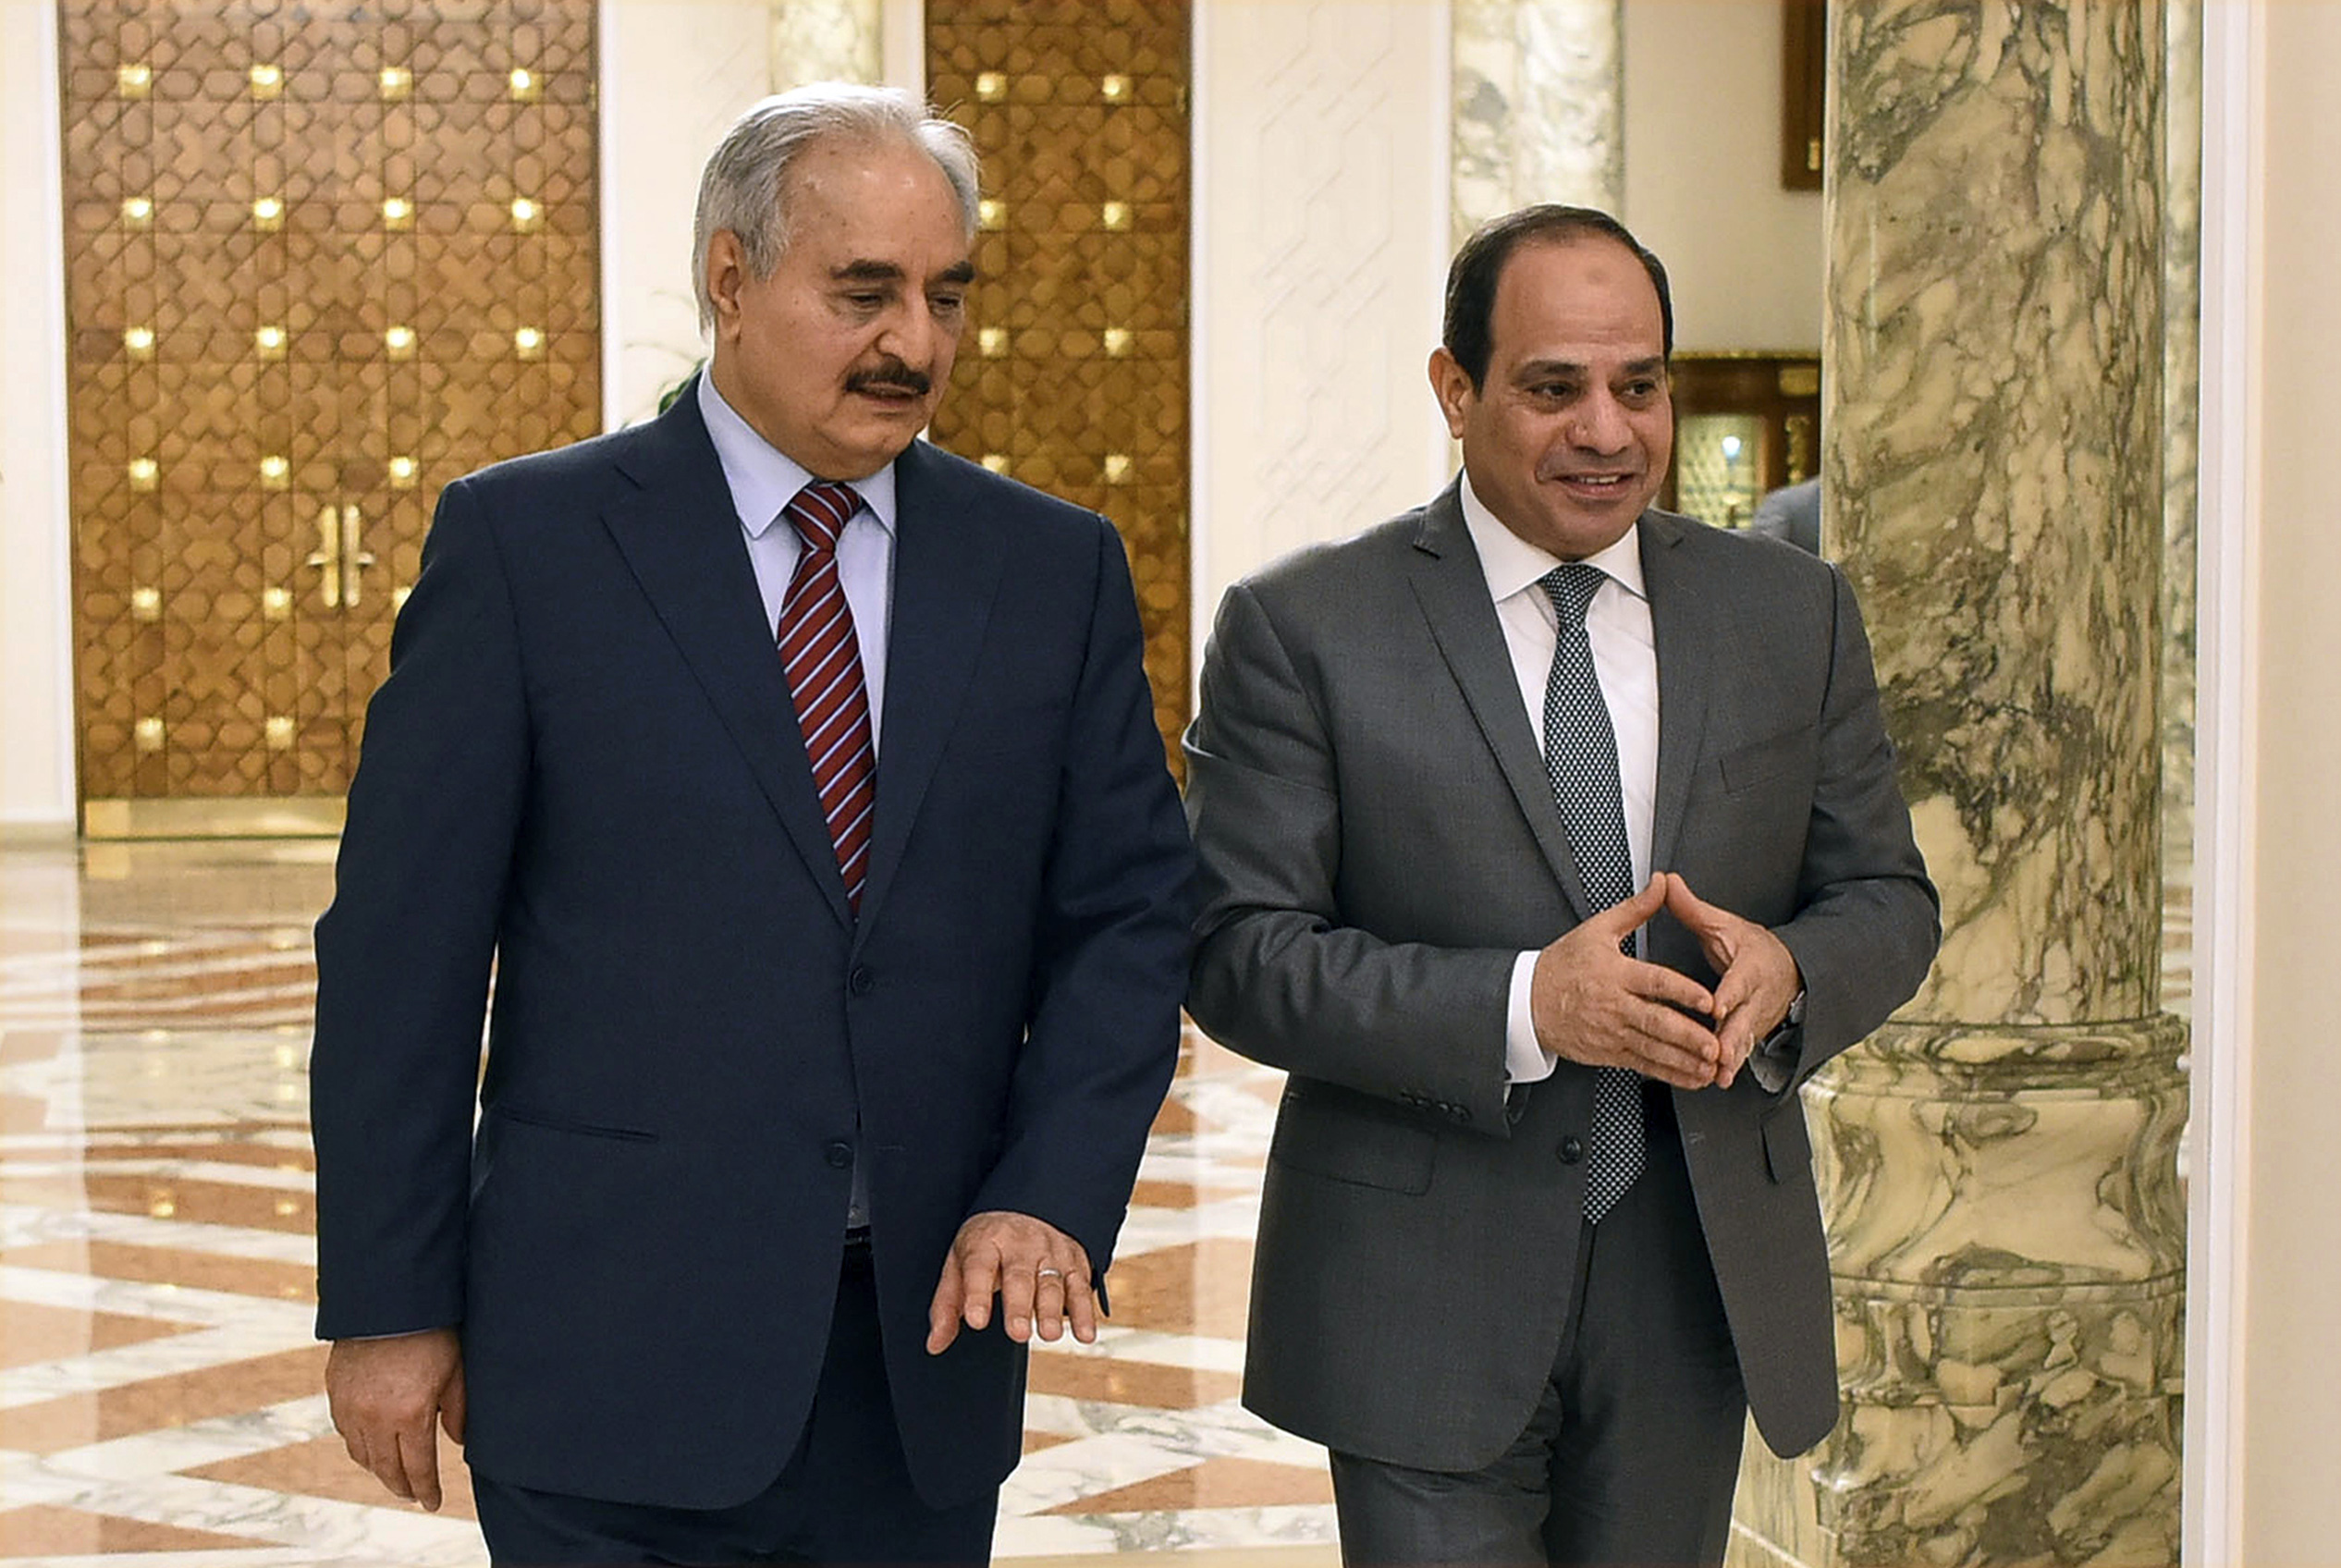 El presidente egipcio Abdel Fattah al Sisi, y el jefe militar libio Jalifa Haftar en un encuentro en mayo de 2019. (Presidencia de Egipto via AP, archivo)